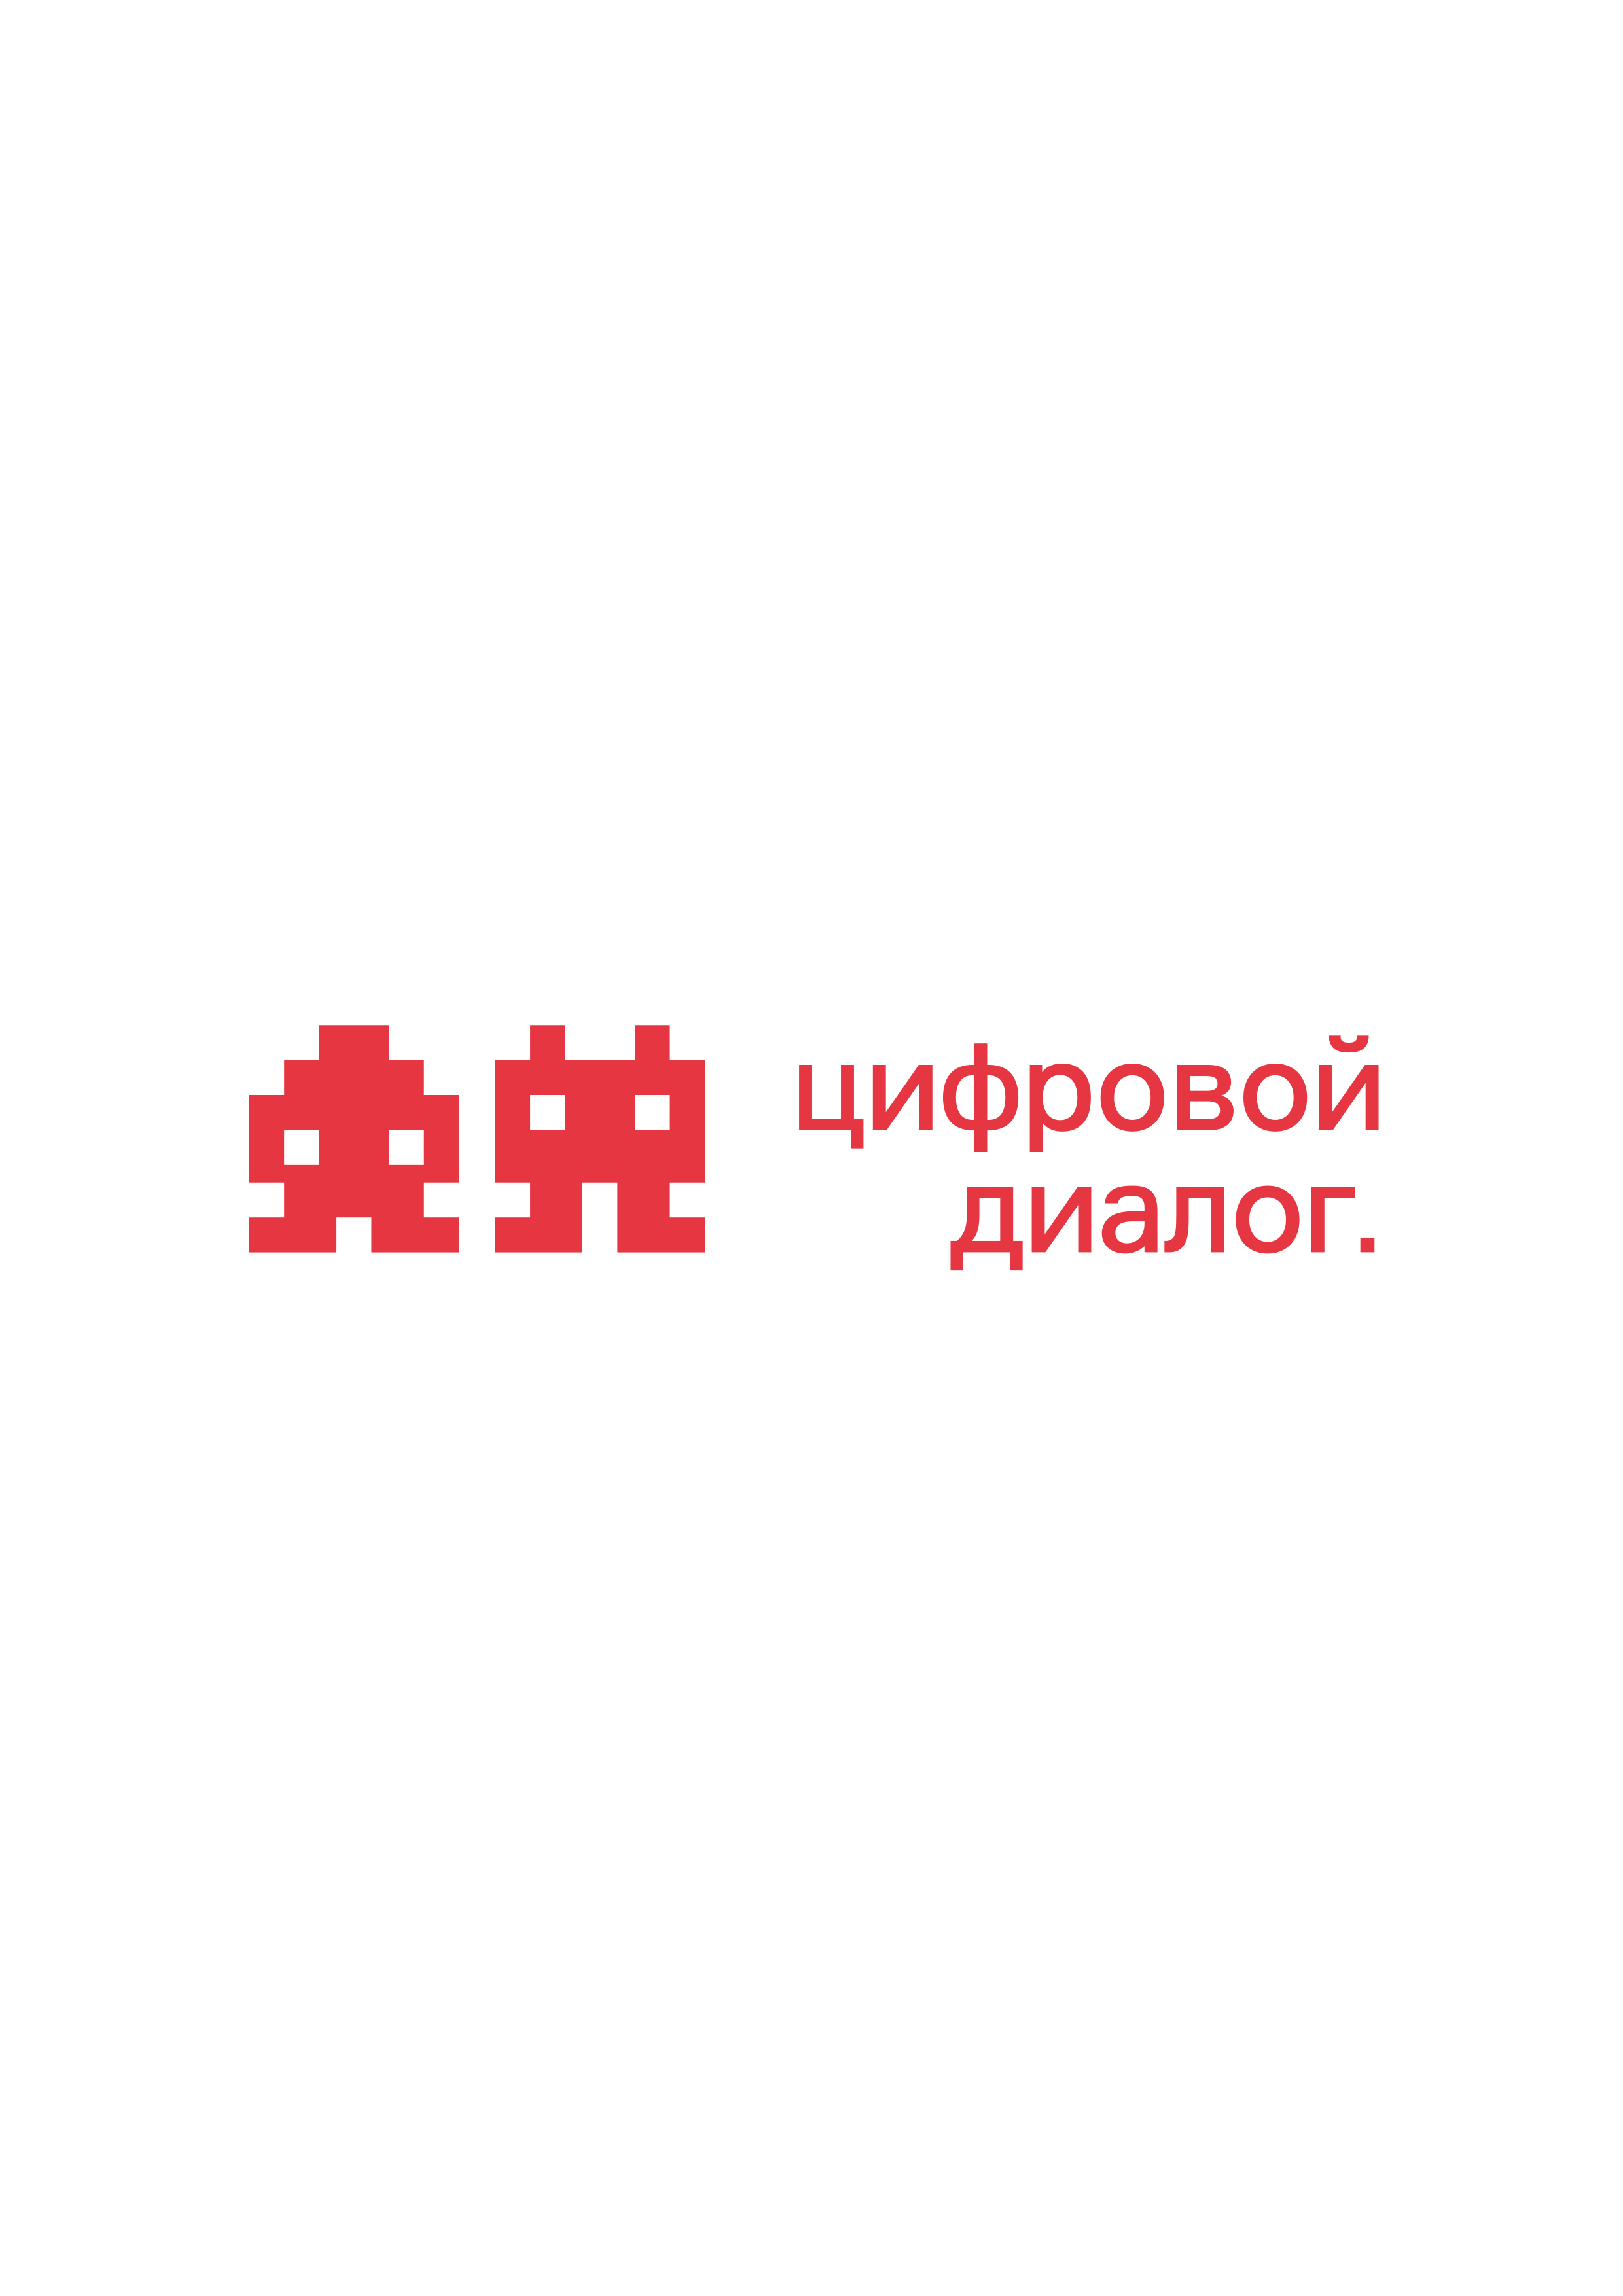 Логотип провайдера Цифровой диалог